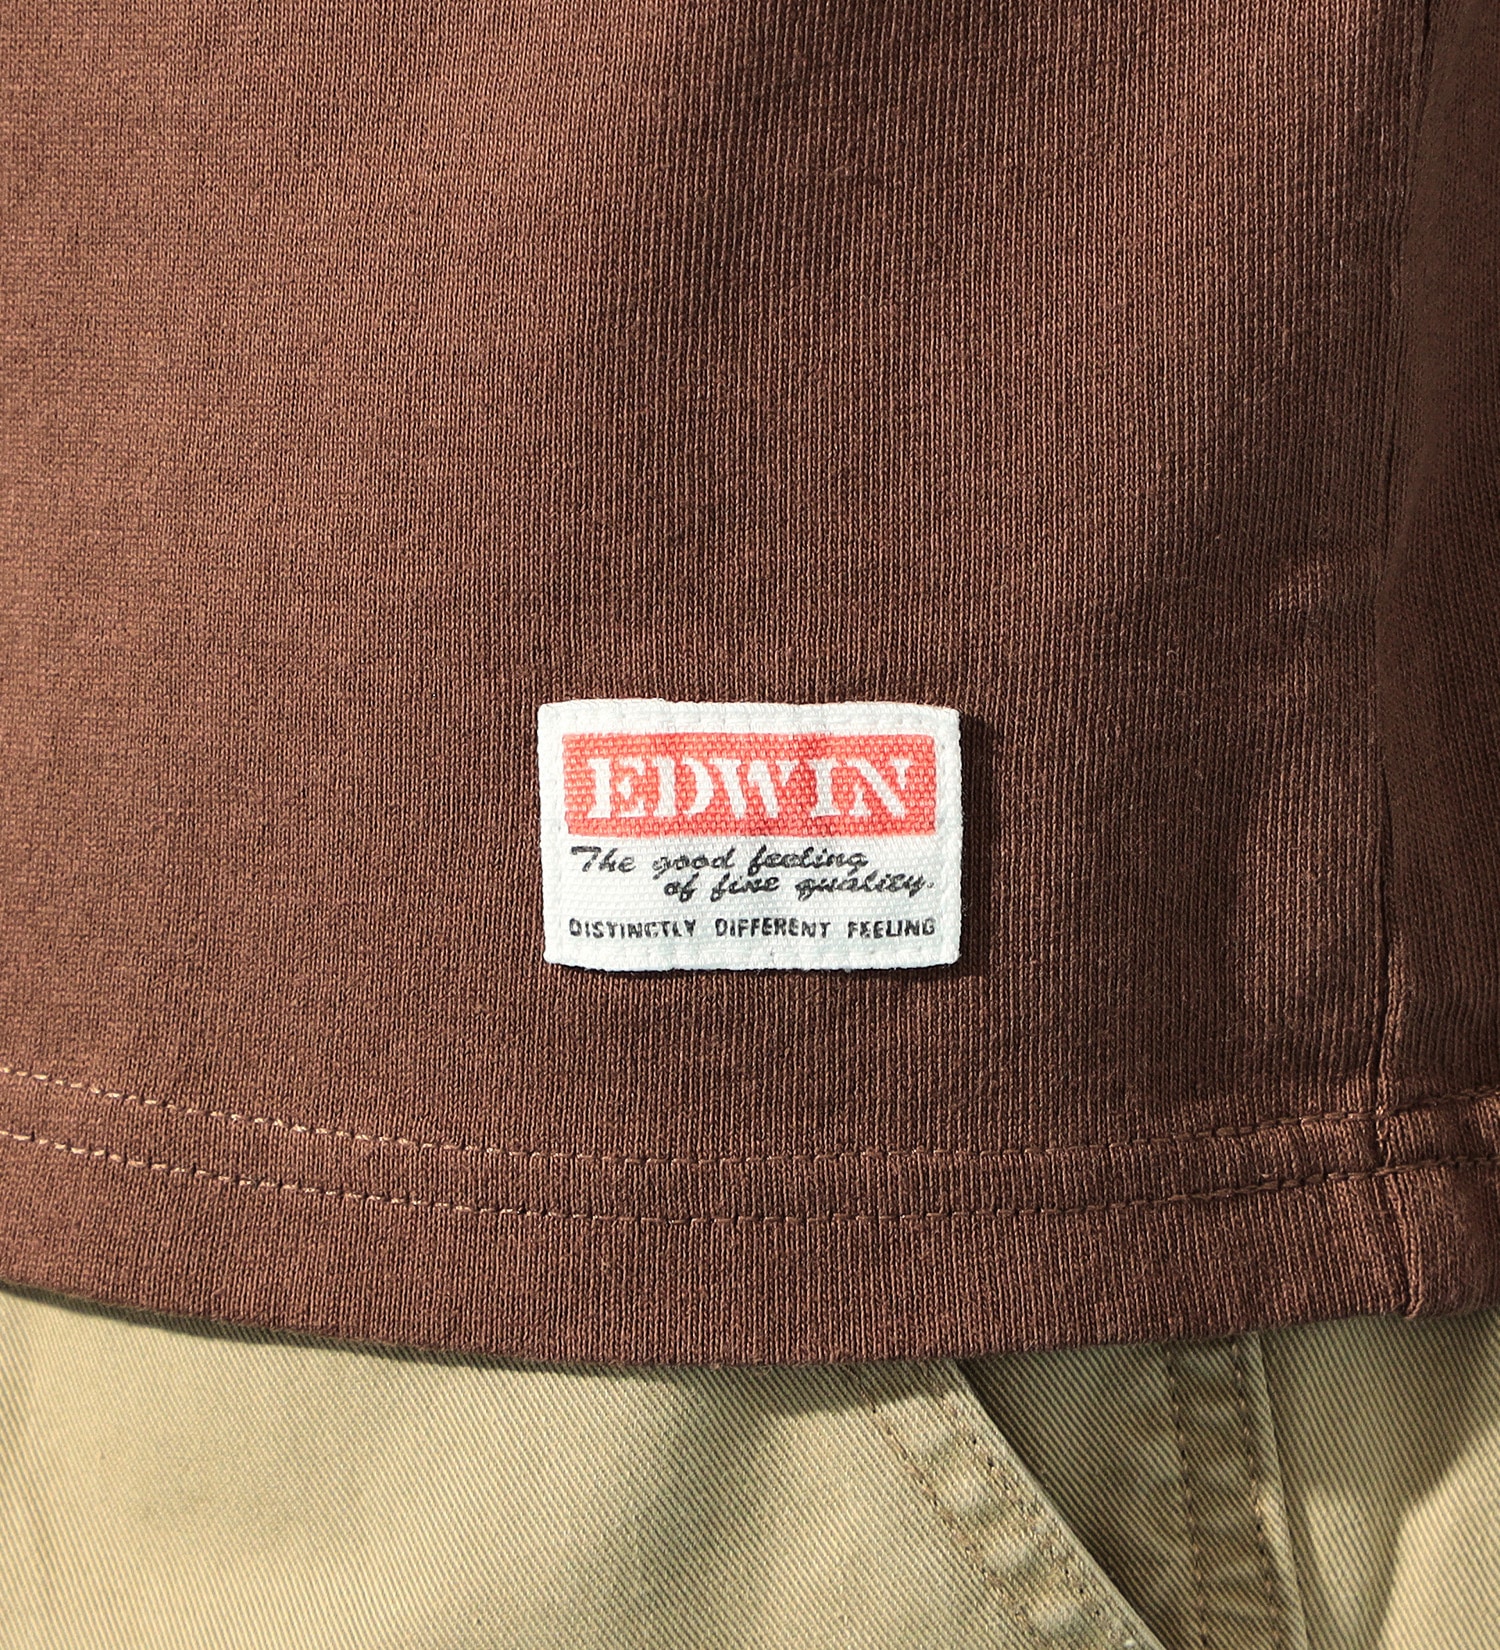 EDWIN(エドウイン)のEDWIN 半袖ポケットTシャツ|トップス/Tシャツ/カットソー/メンズ|ブラウン